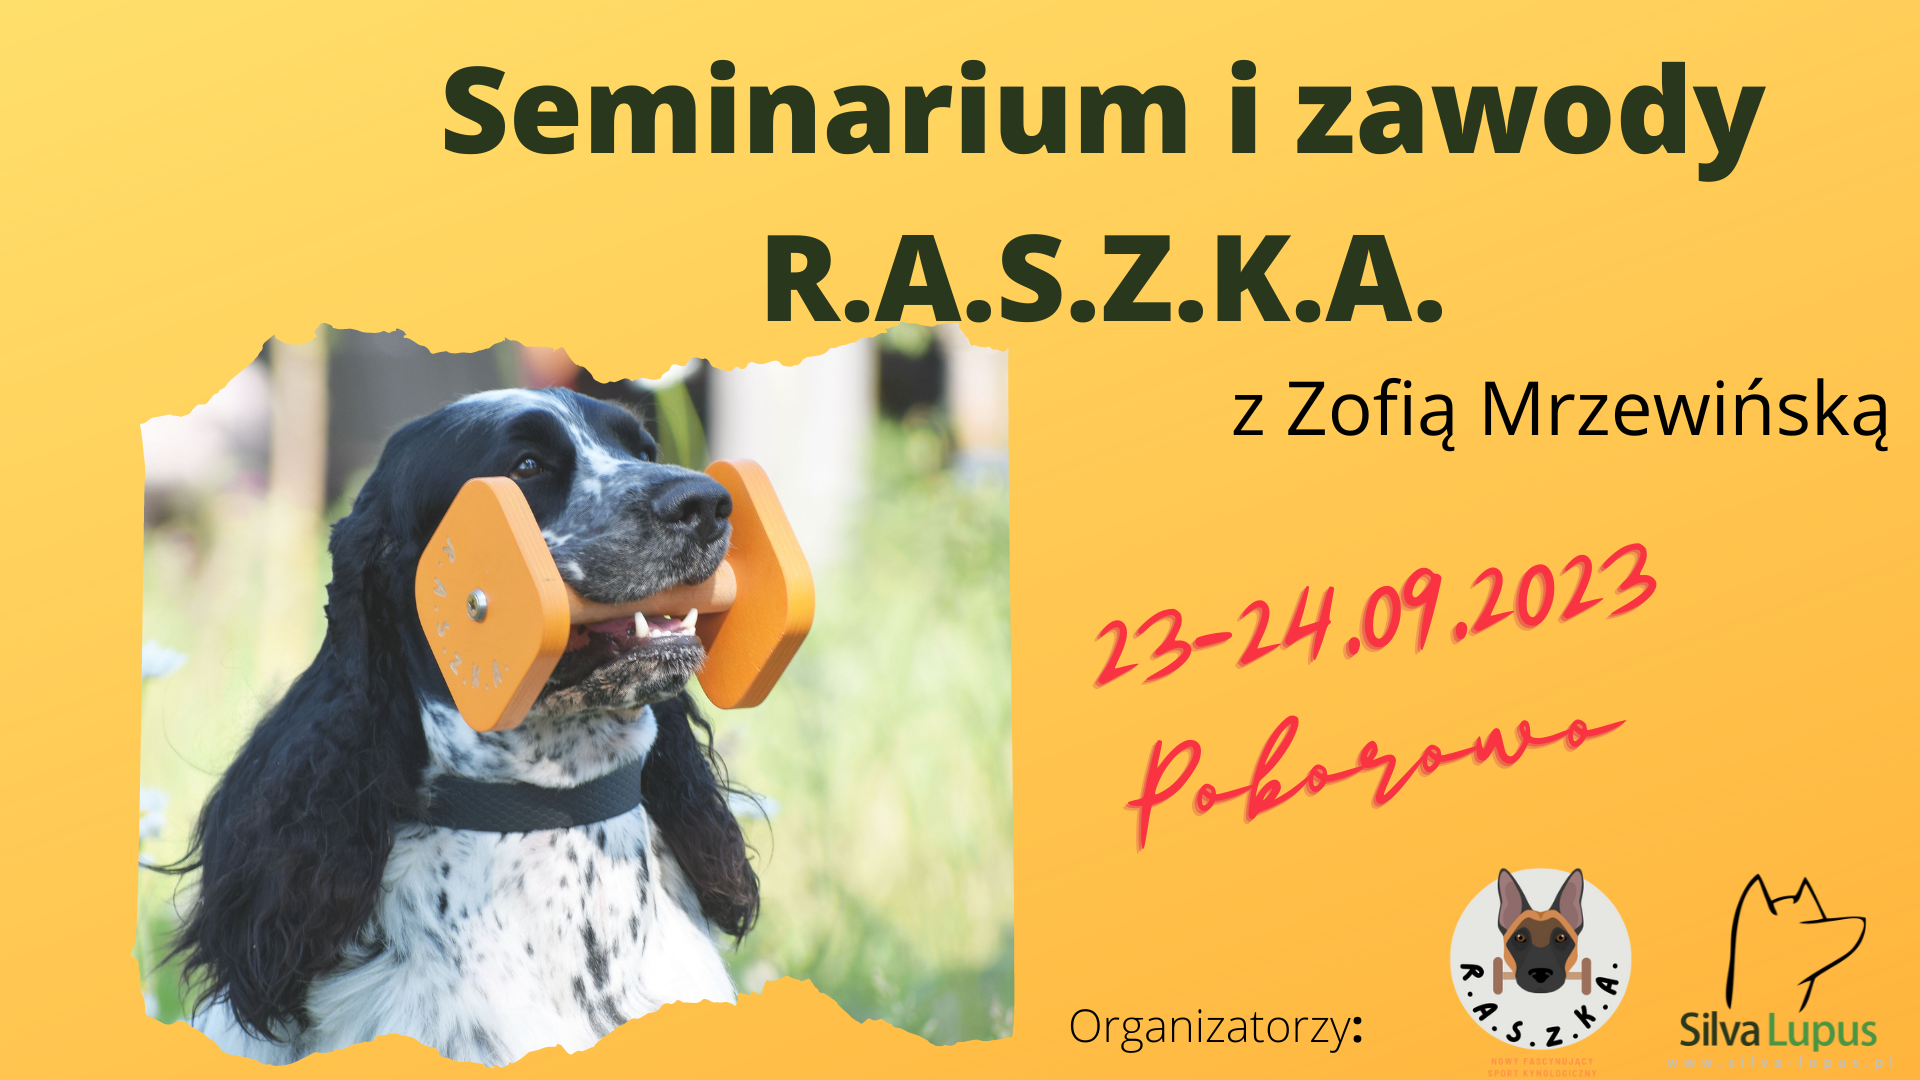 Seminarium i zawody R.A.S.Z.K.A. na Kaszubach! – odwołane